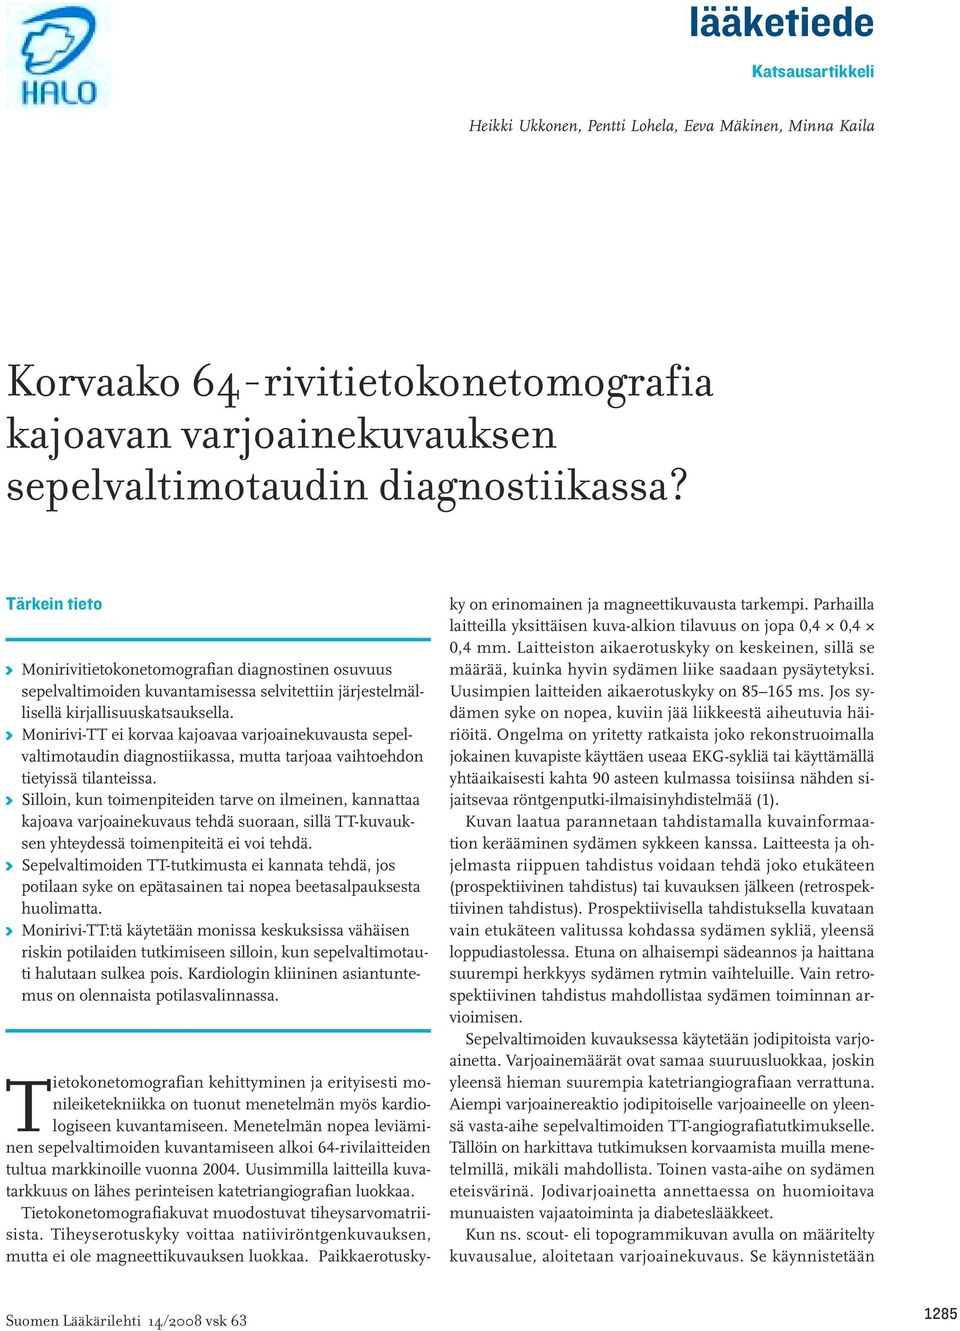 K Monirivi-TT ei korvaa kajoavaa varjoainekuvausta sepelvaltimotaudin diagnostiikassa, mutta tarjoaa vaihtoehdon tietyissä tilanteissa.